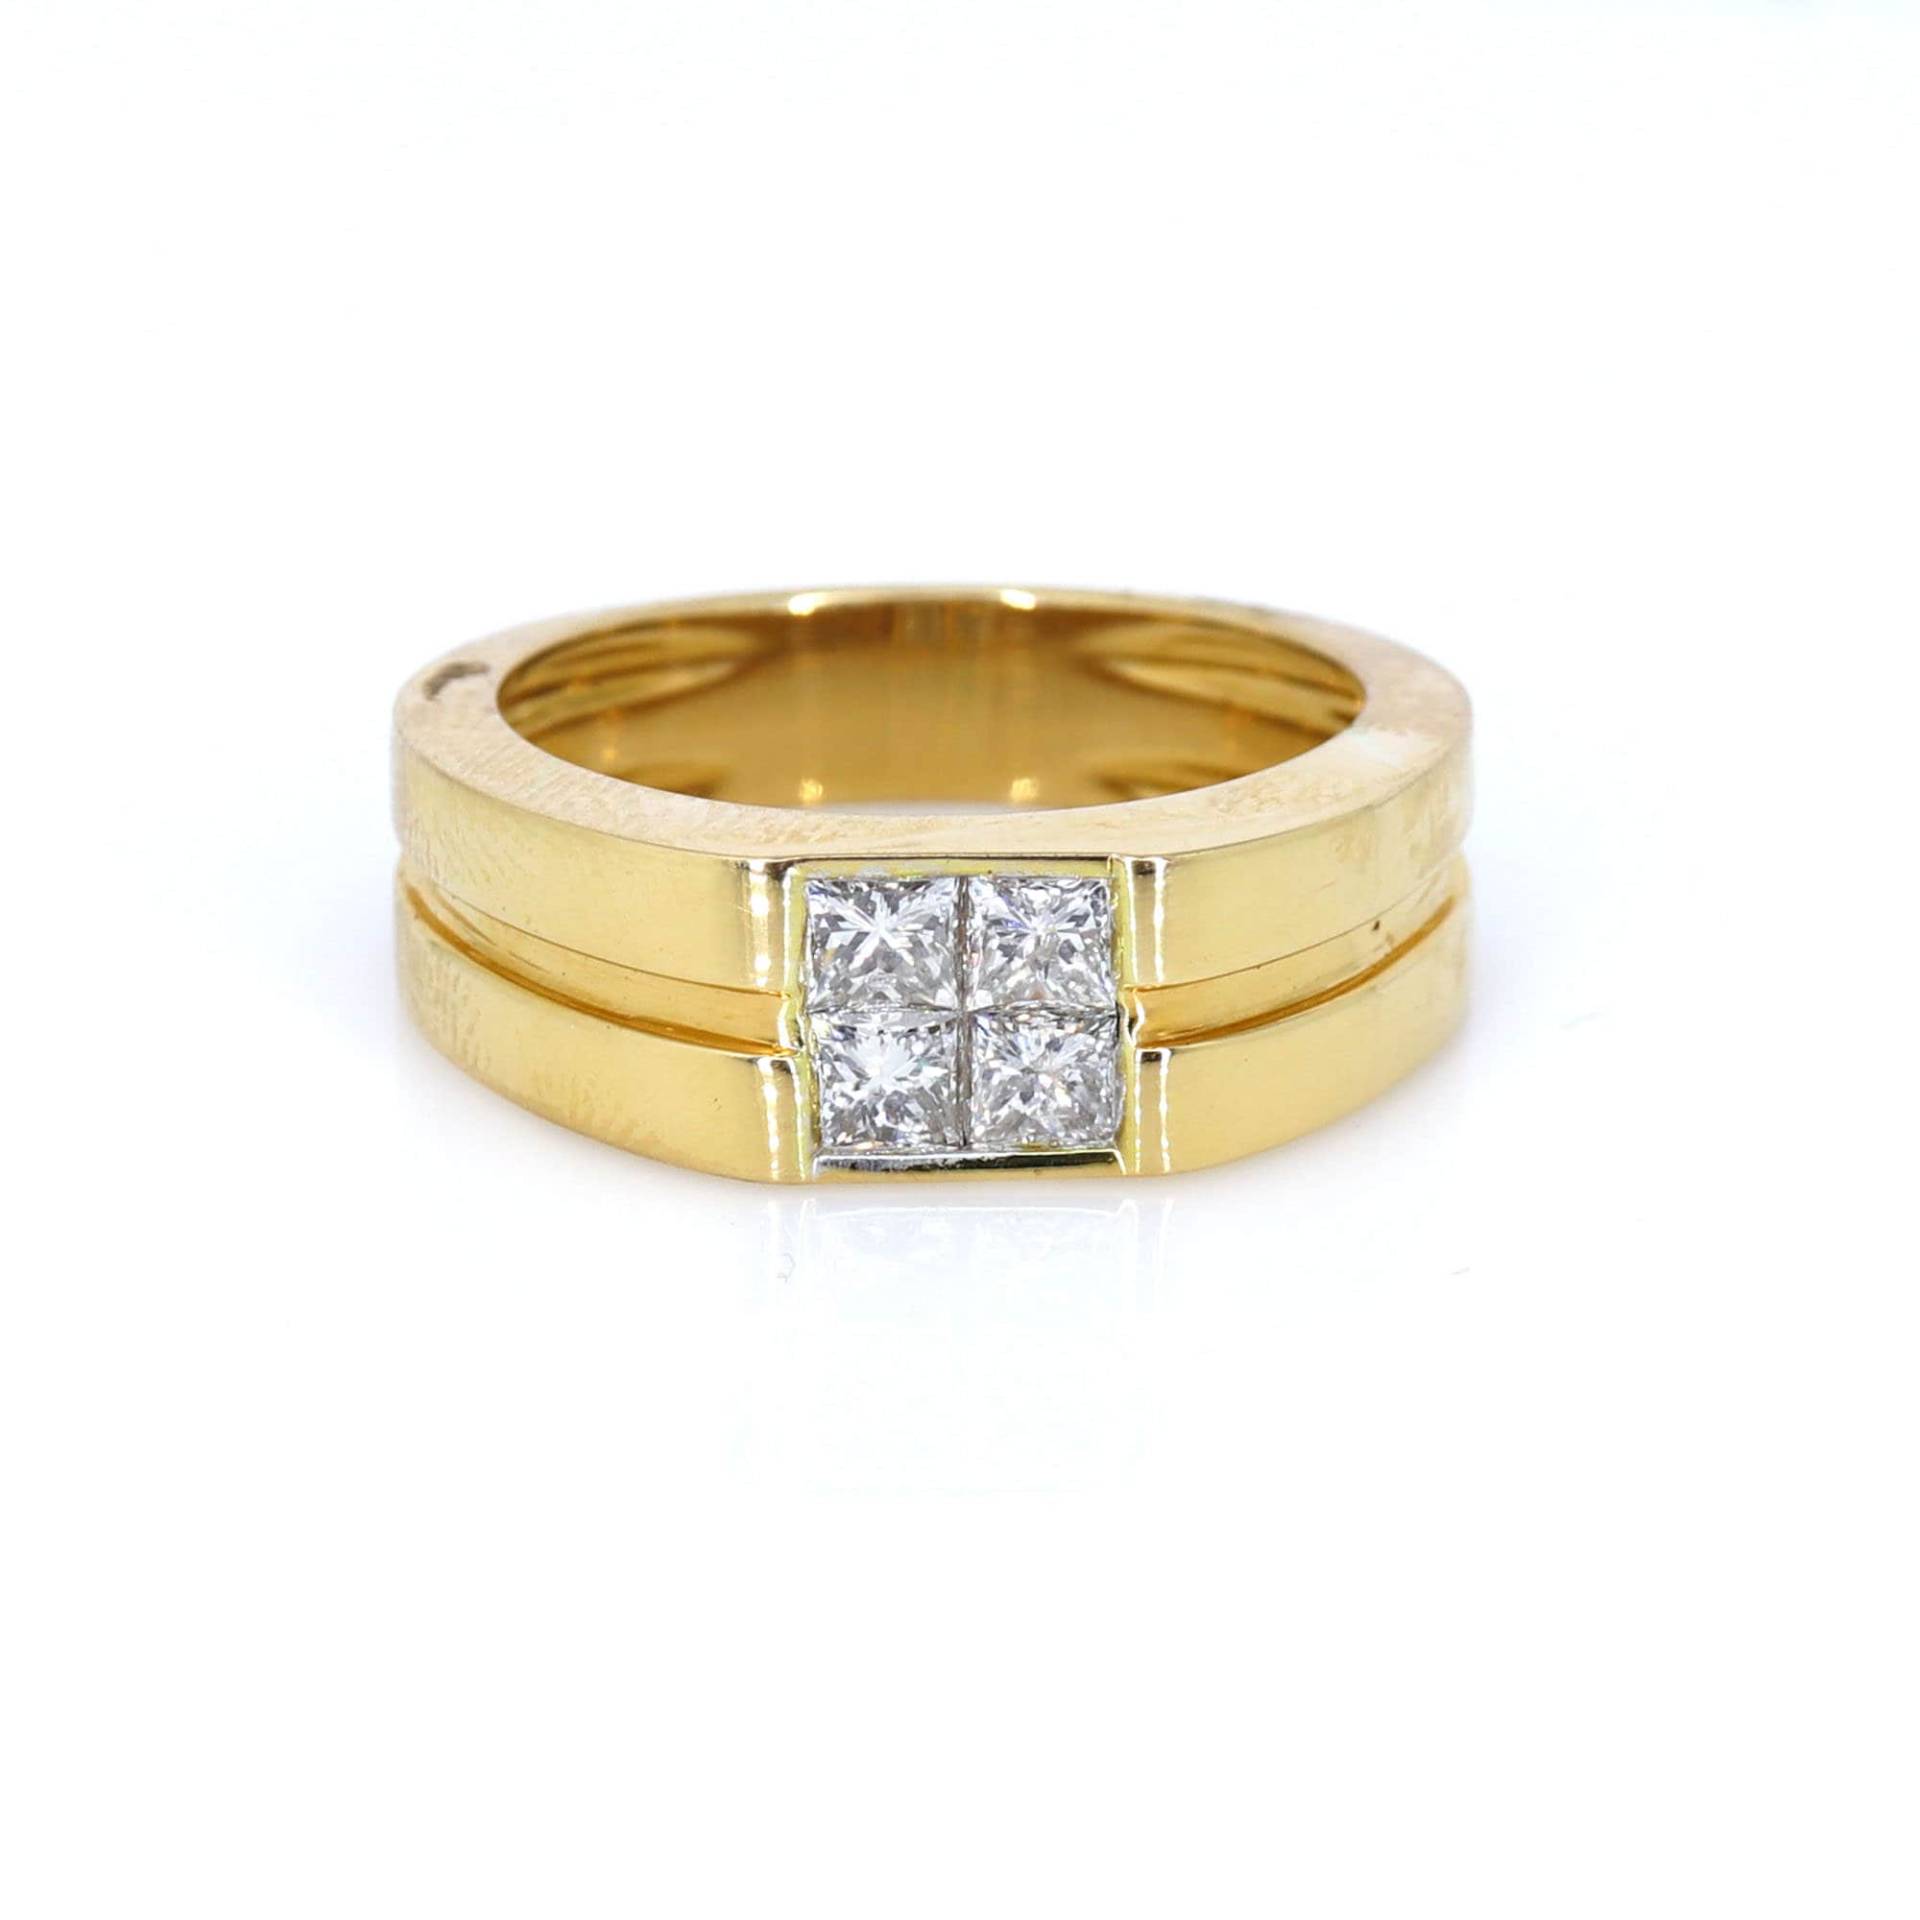 1.02 Karat Diamant Ehering in 18K Massiv Gelbgold, Princess Cut Unsichtbare Einstellung Ring Für Ihn von Shubhkrishnajewels